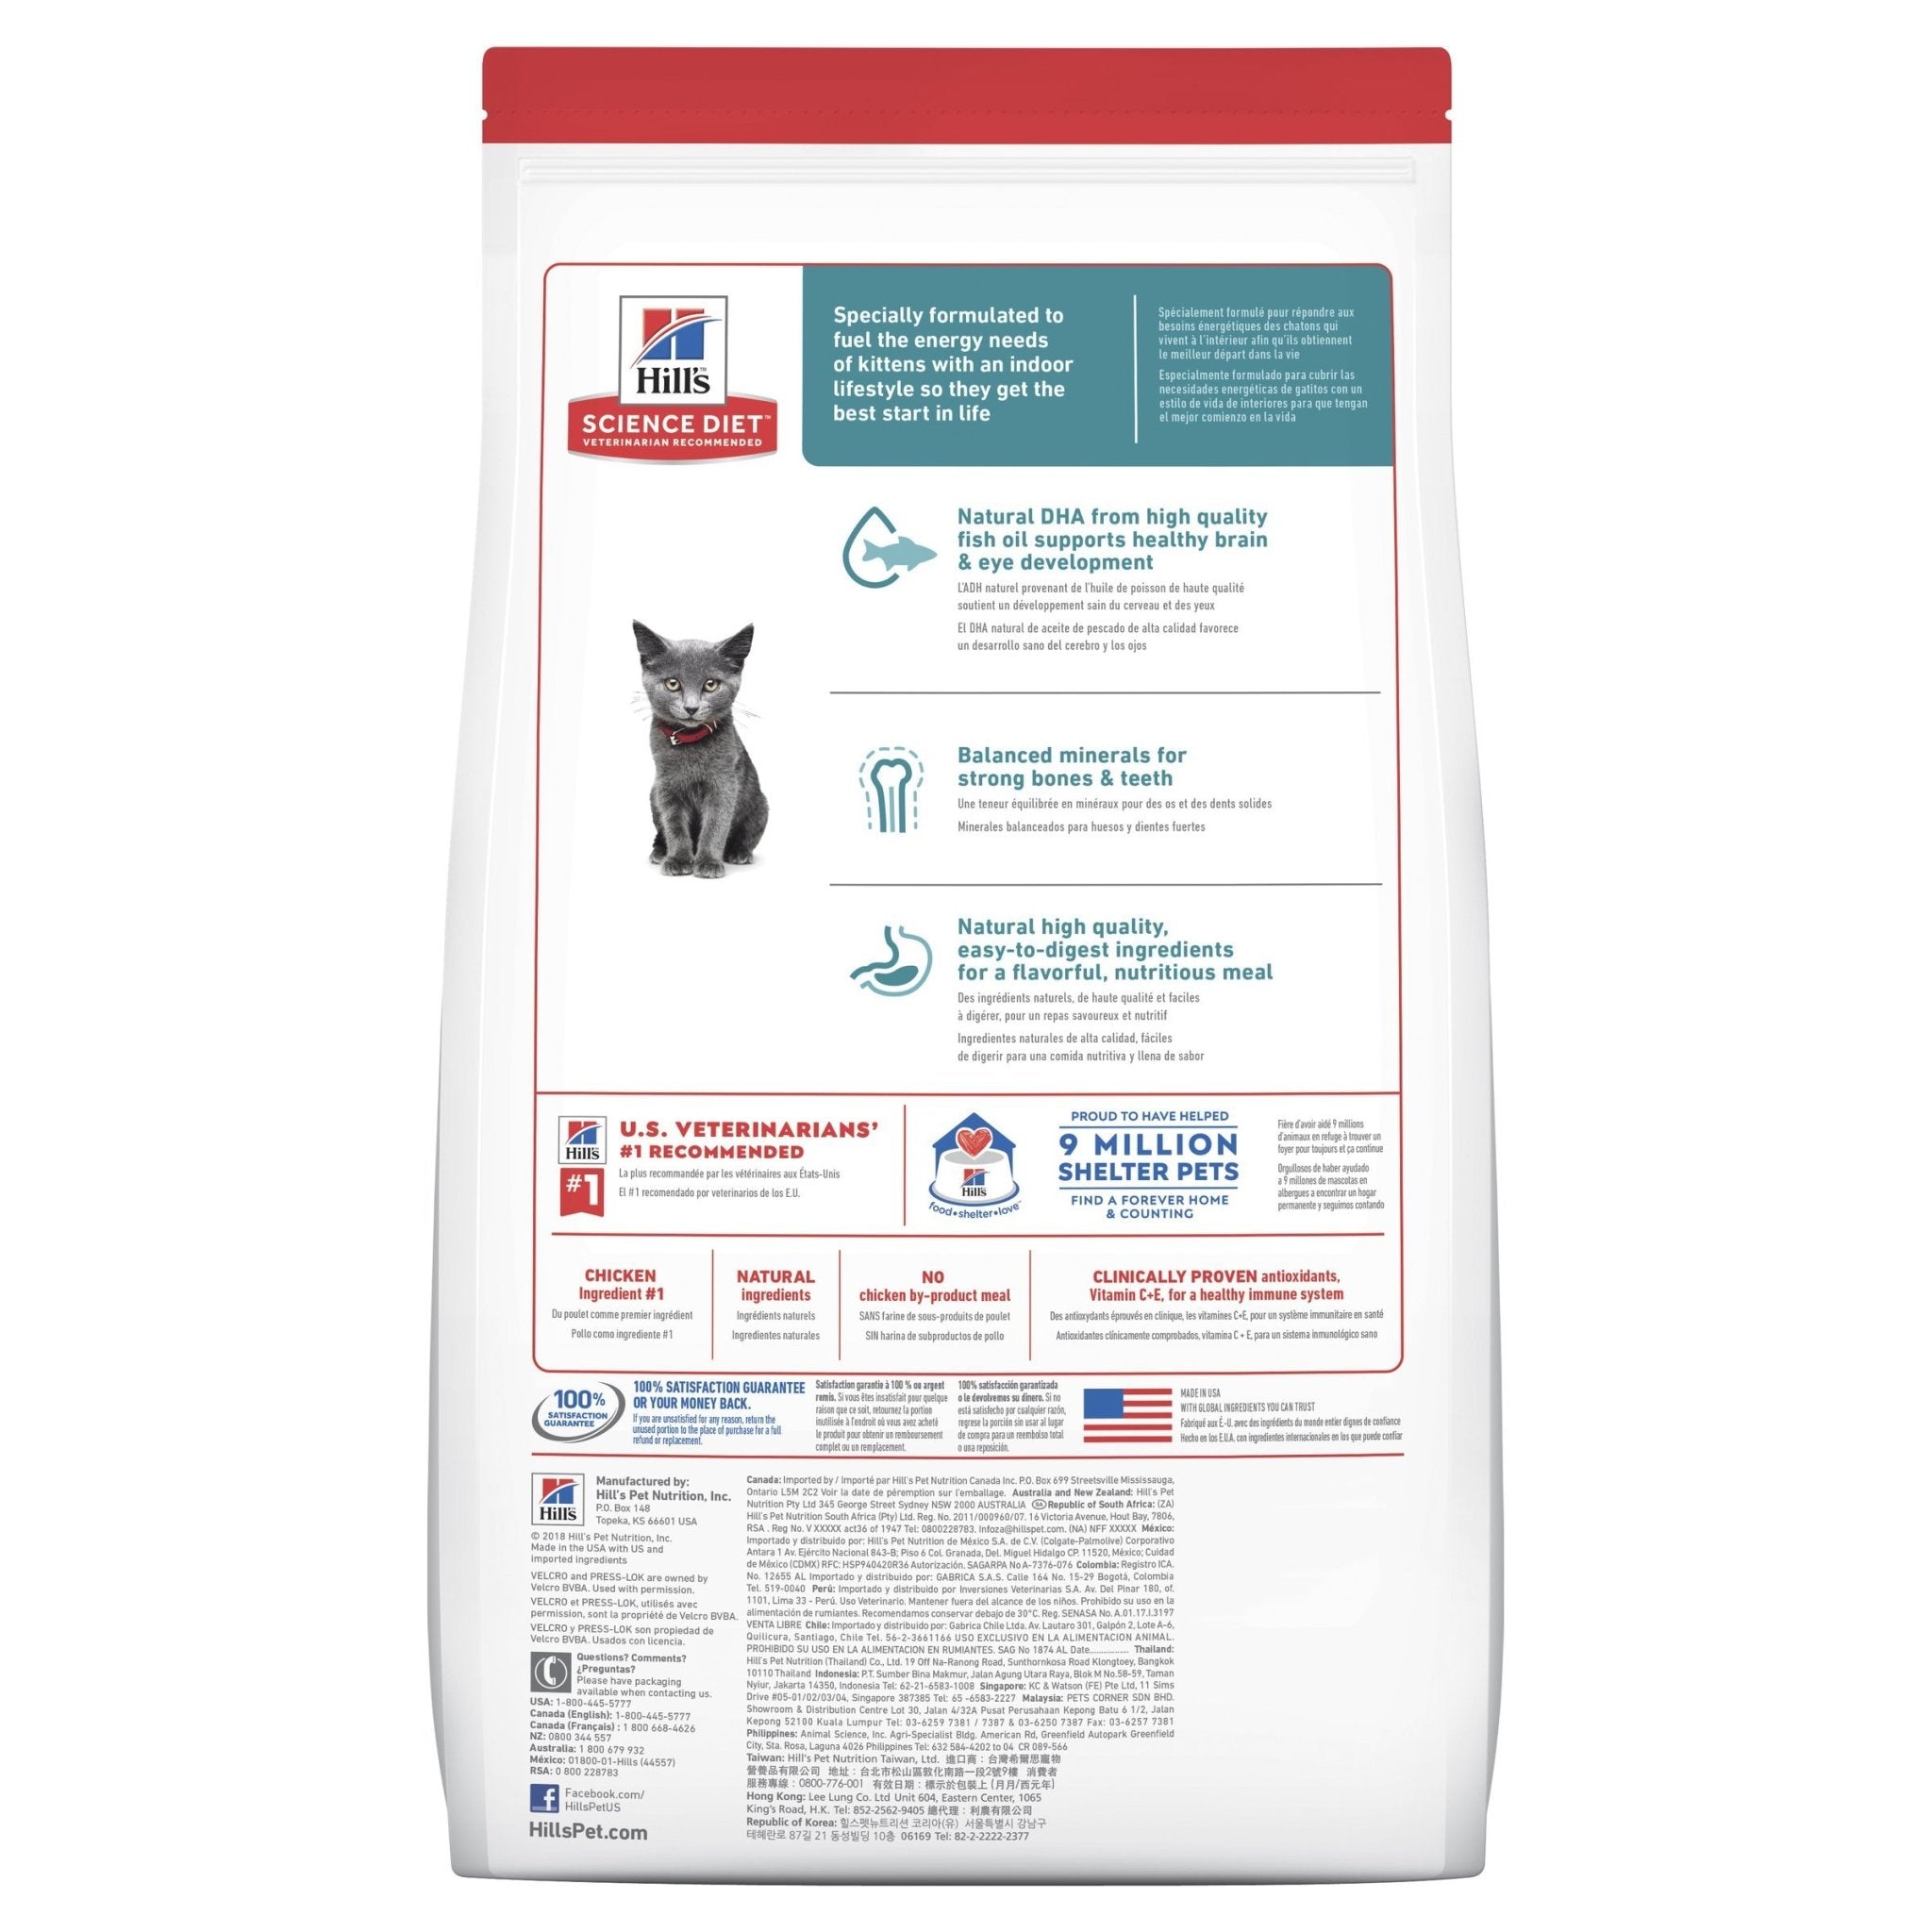 Hill's Science Diet Kitten Indoor Dry Cat Food